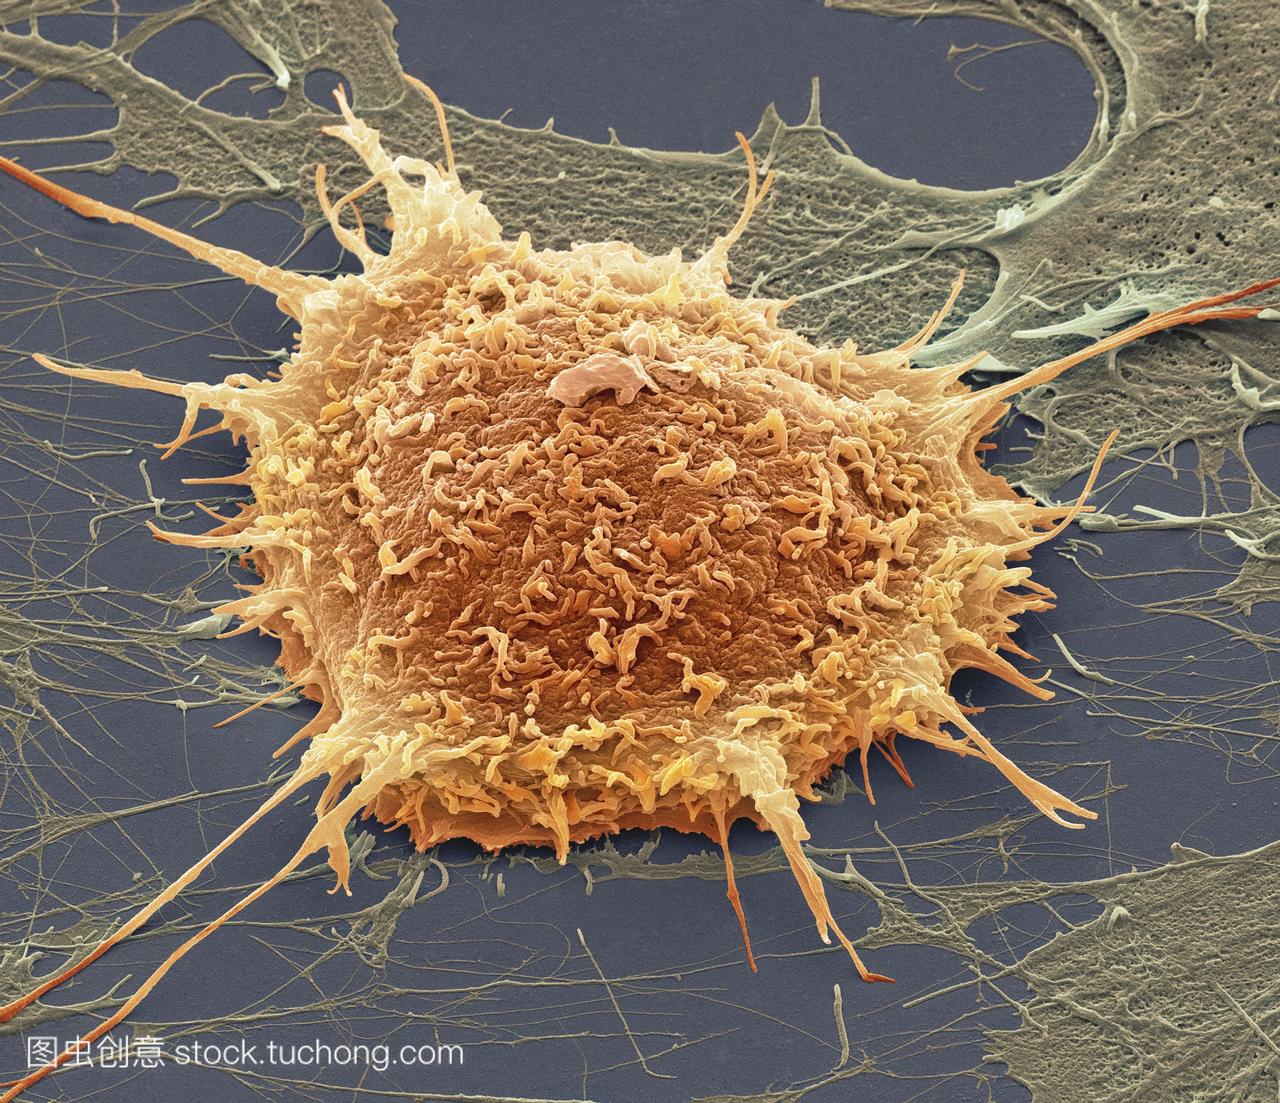 宫颈癌细胞,彩色扫描电镜sem。培养的癌细胞